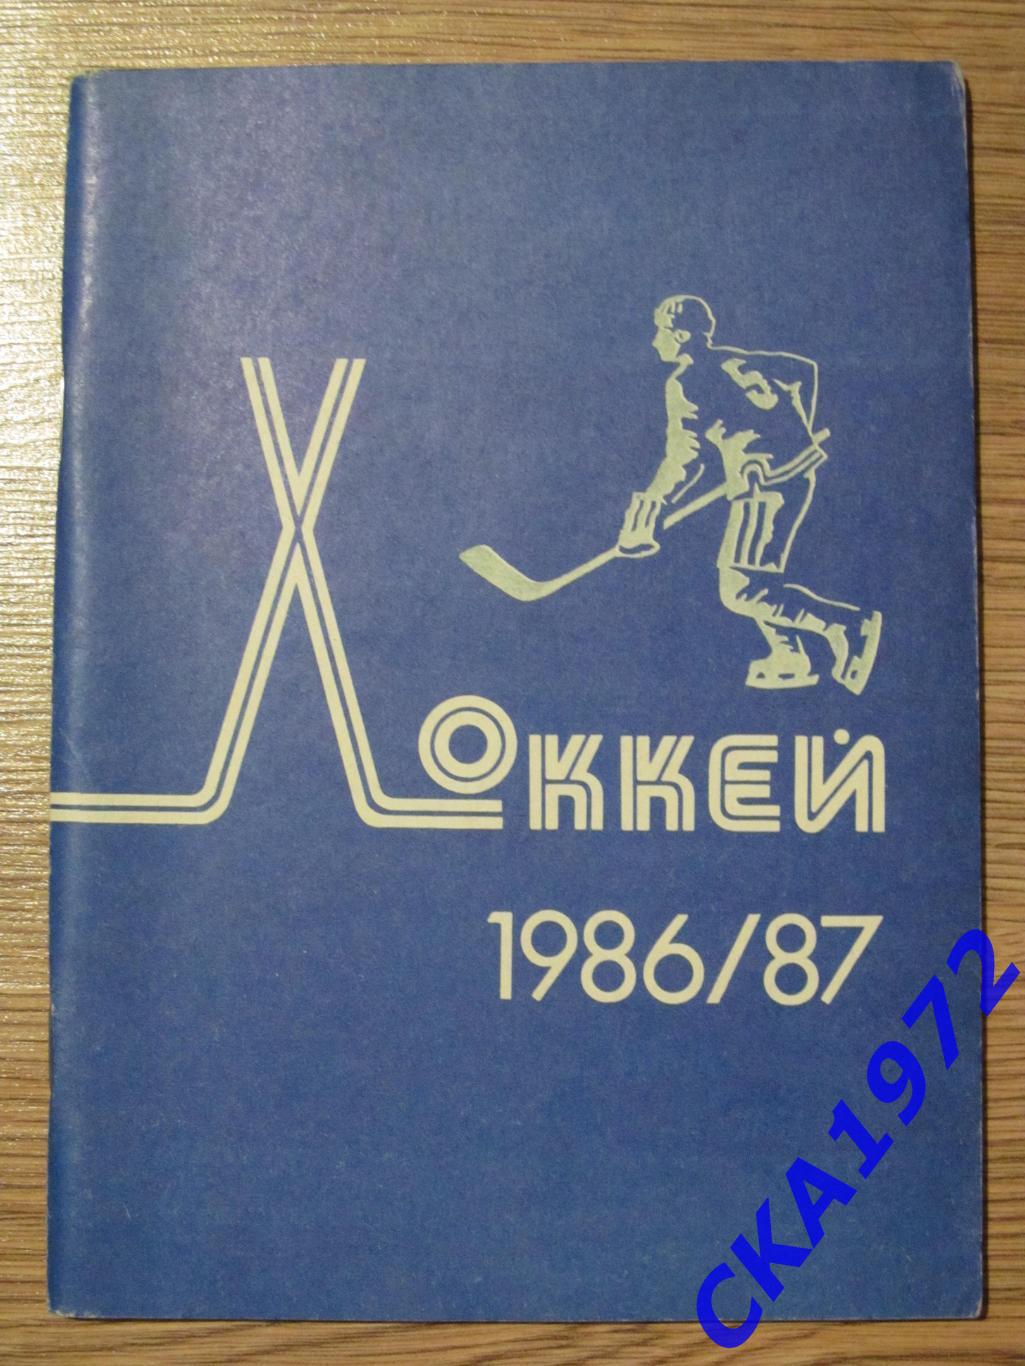 календарь-справочник Минск 1986/87